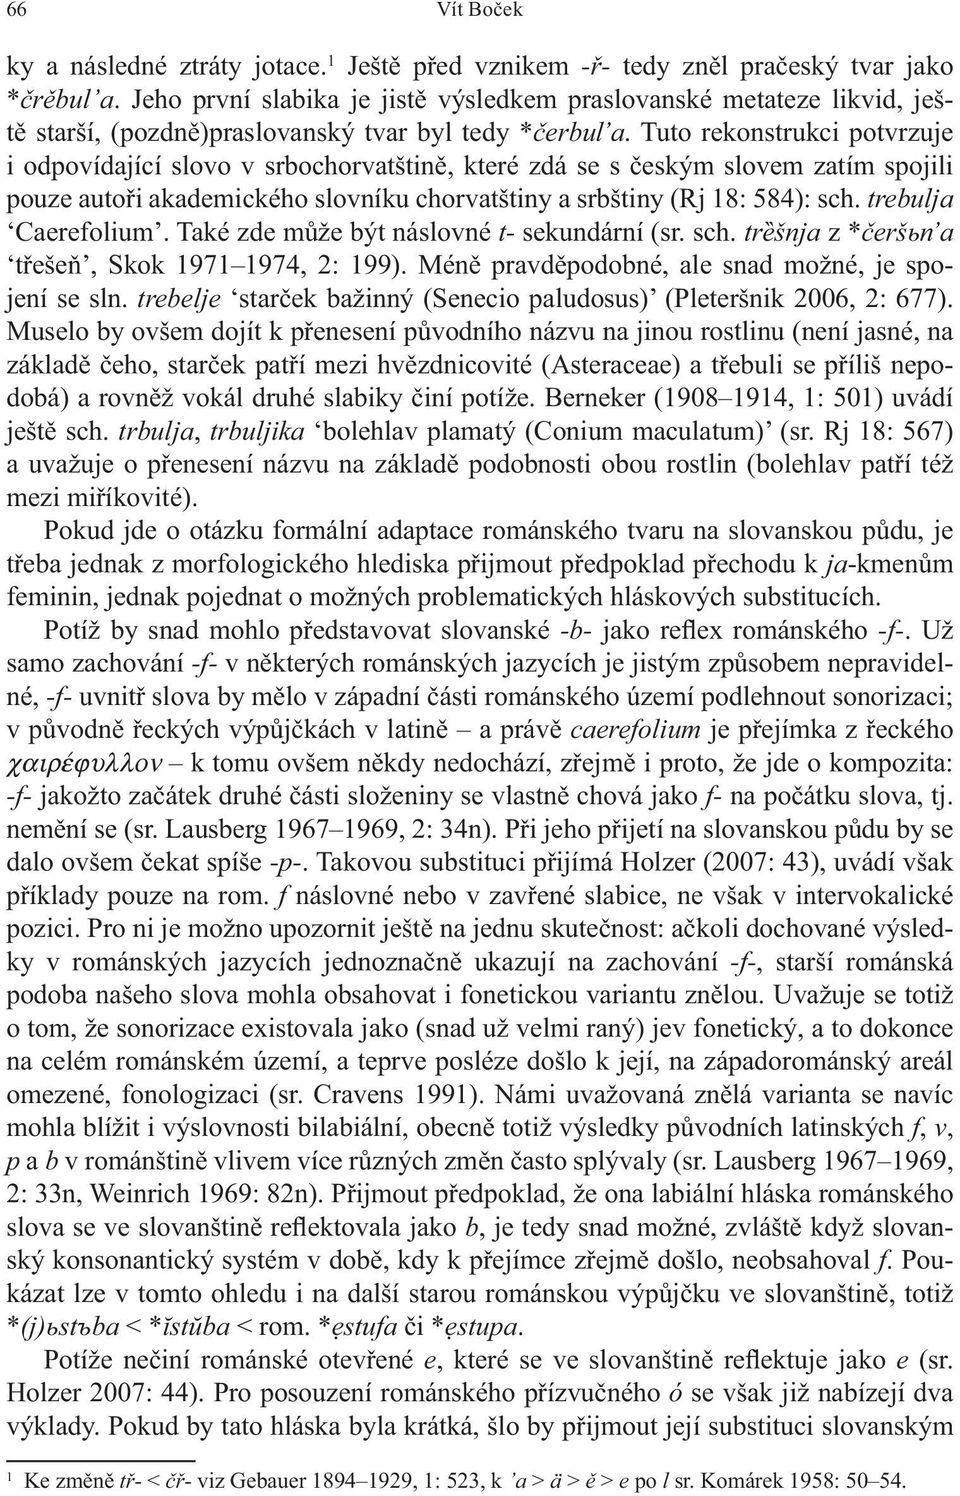 Tuto rekonstrukci potvrzuje i odpovídající slovo v srbochorvatštin, které zdá se s eským slovem zatím spojili pouze auto i akademického slovníku chorvatštiny a srbštiny (Rj 18: 584): sch.